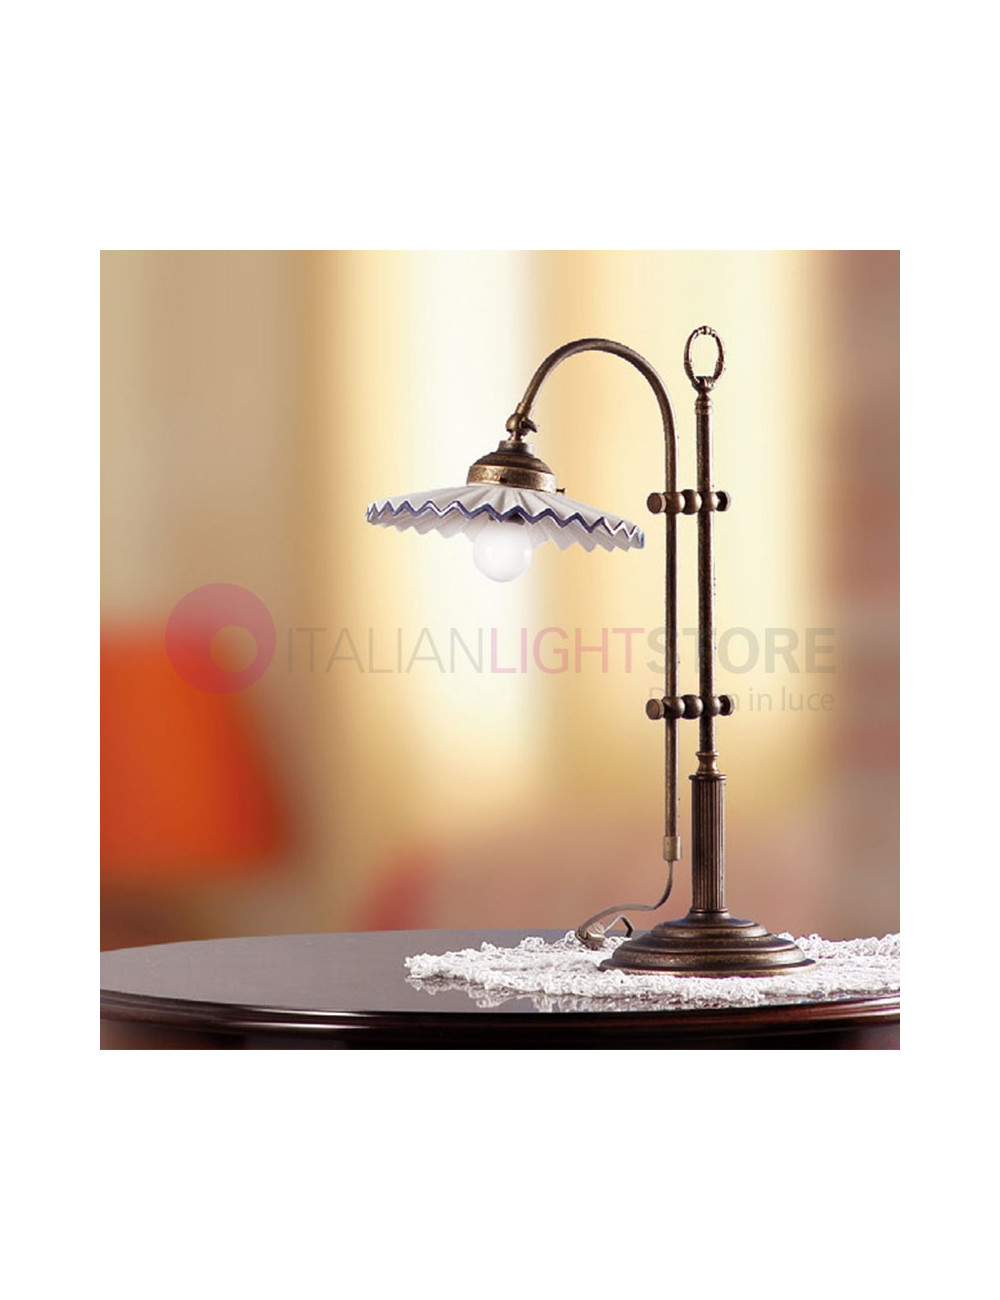 CASCINA Lamp table in Classic Rustic Country - Ceramiche Borso